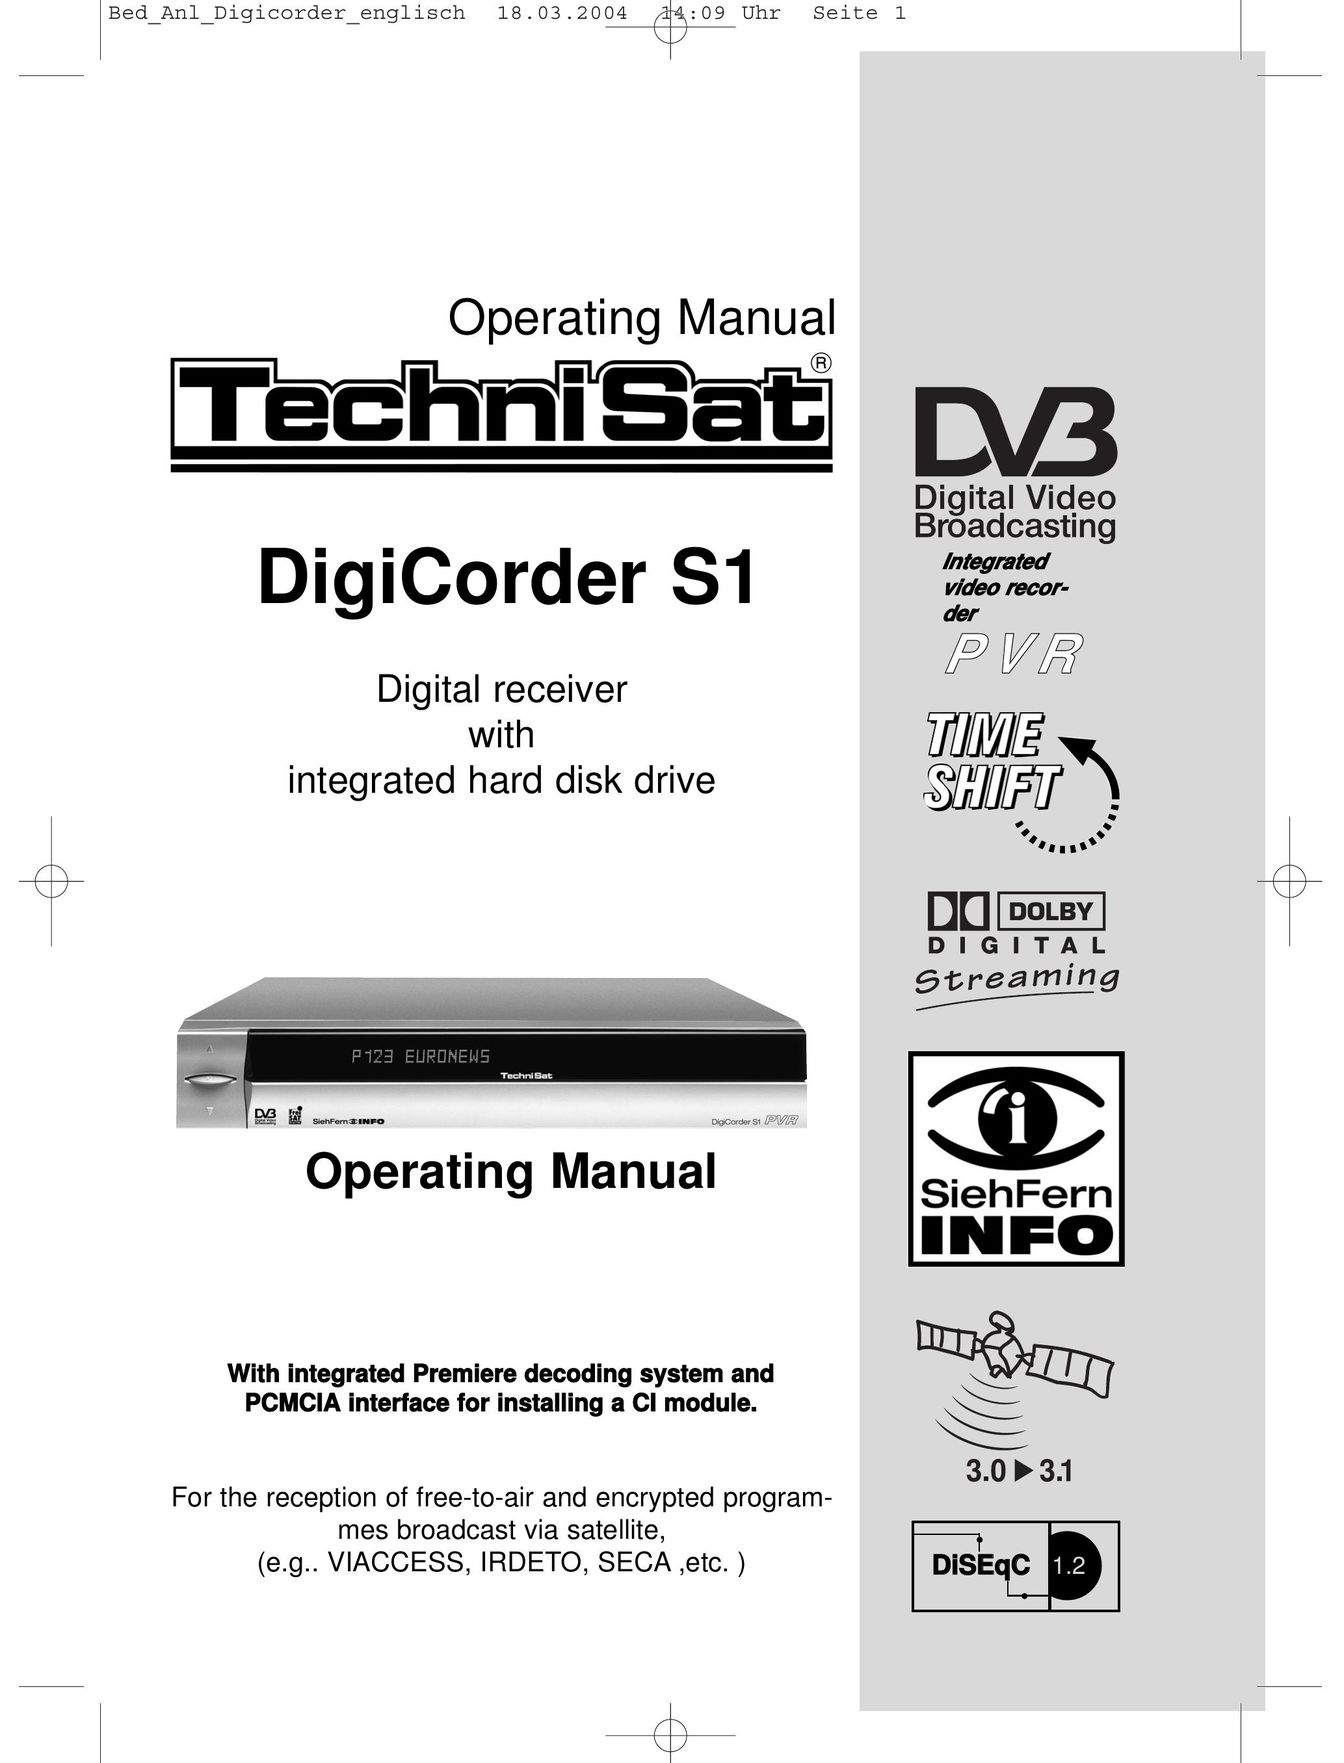 TechniSat DigiCorder S1 Satellite TV System User Manual